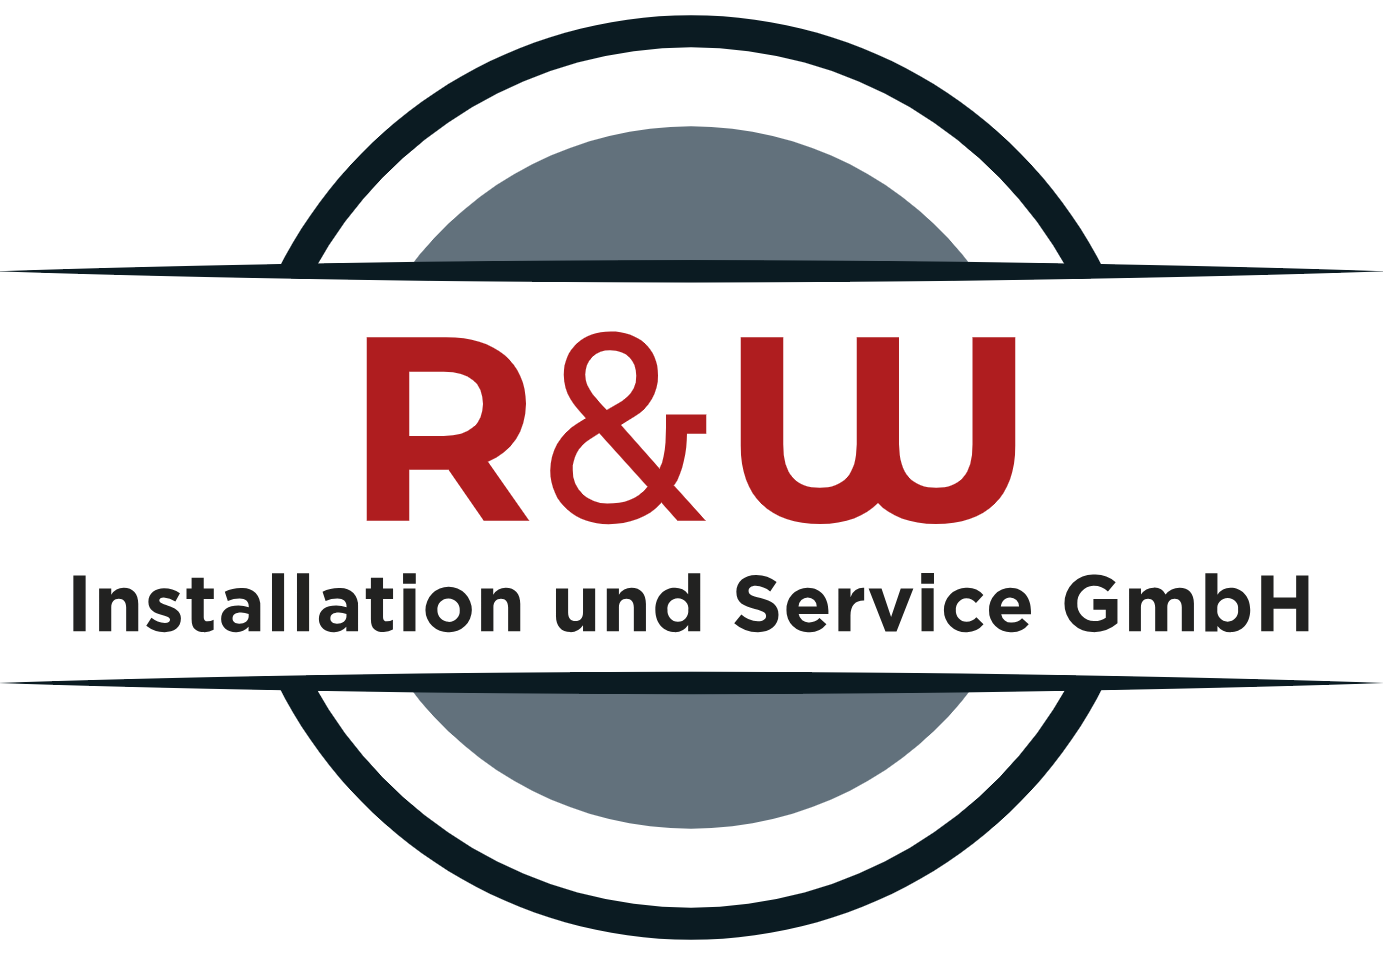 R&W Installation und Service GmbH